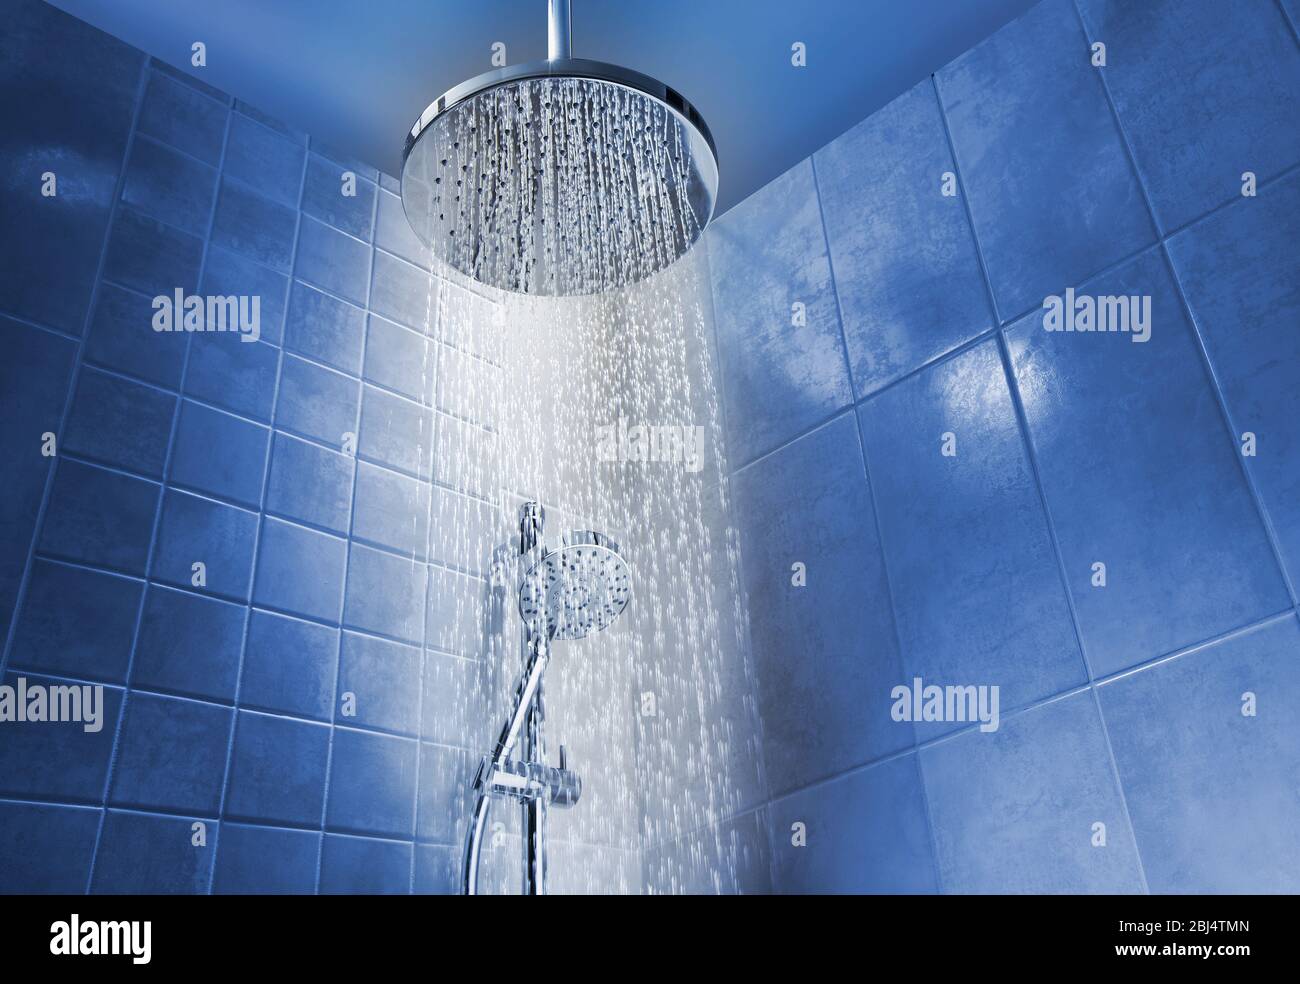 Niedriger Winkel des fließenden Wassers aus dem Duschkopf in einer kühlen farbigen Dusche im Badezimmer Stockfoto